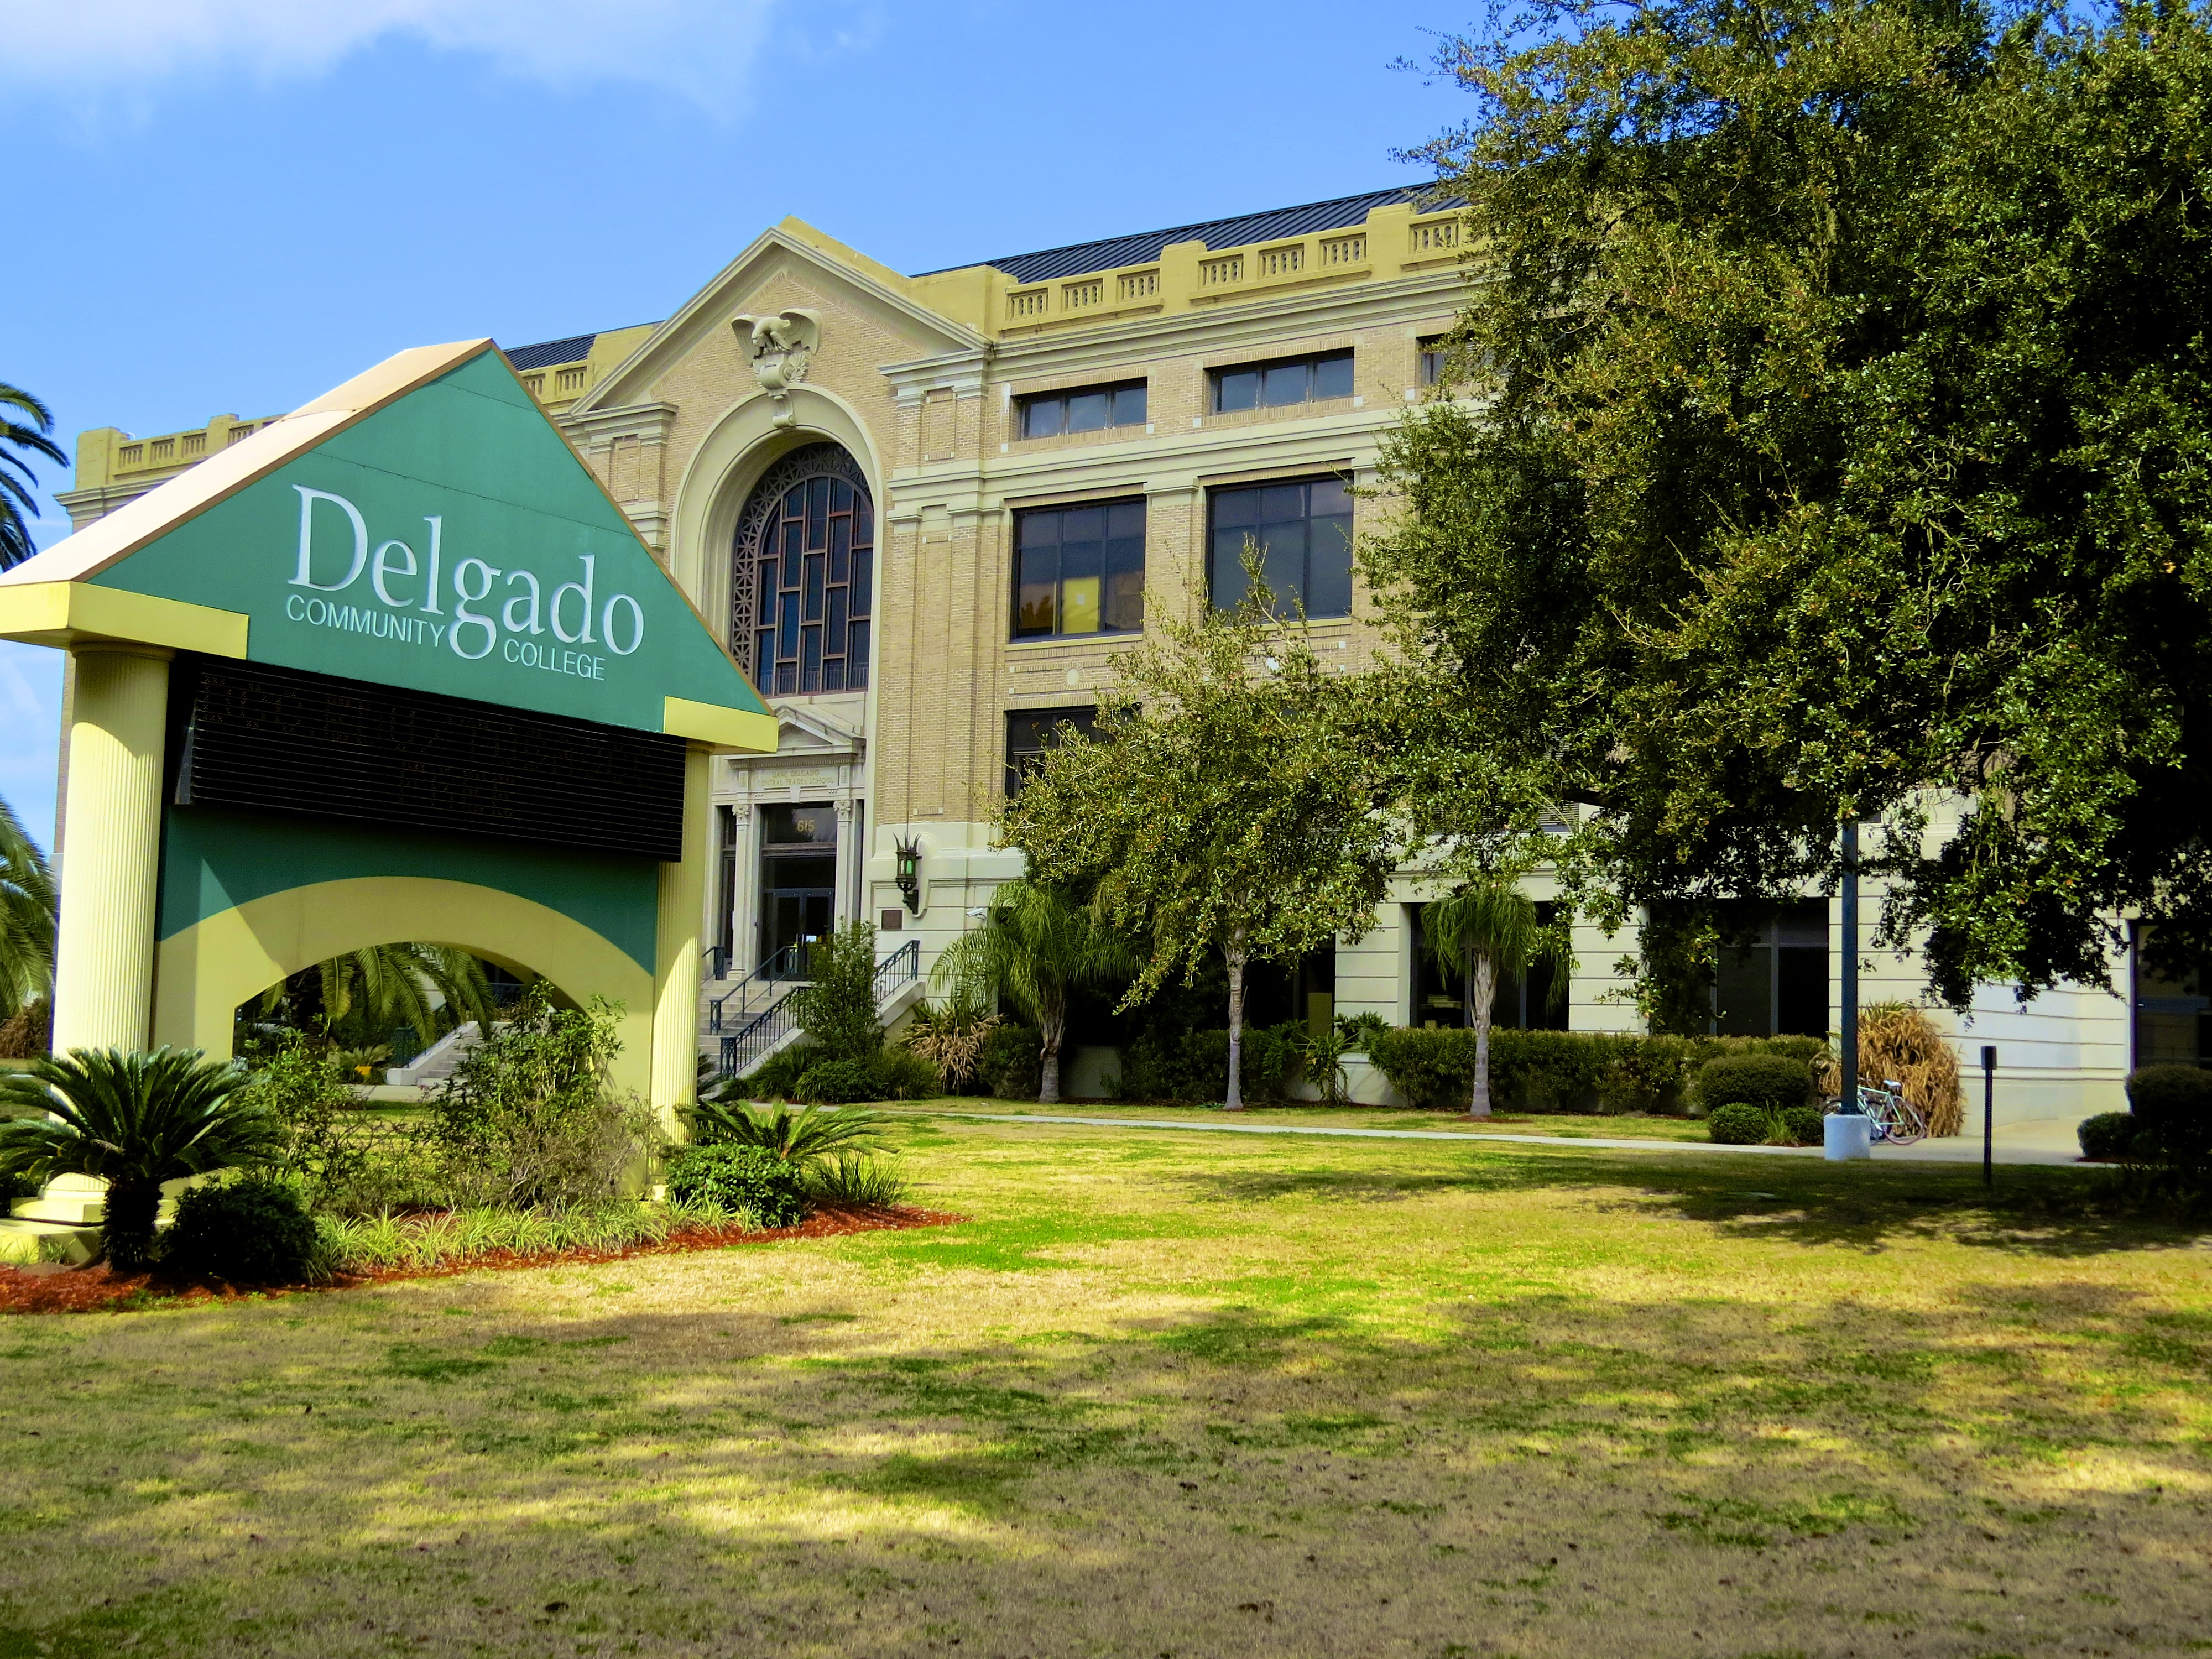 Delgado Community College 74